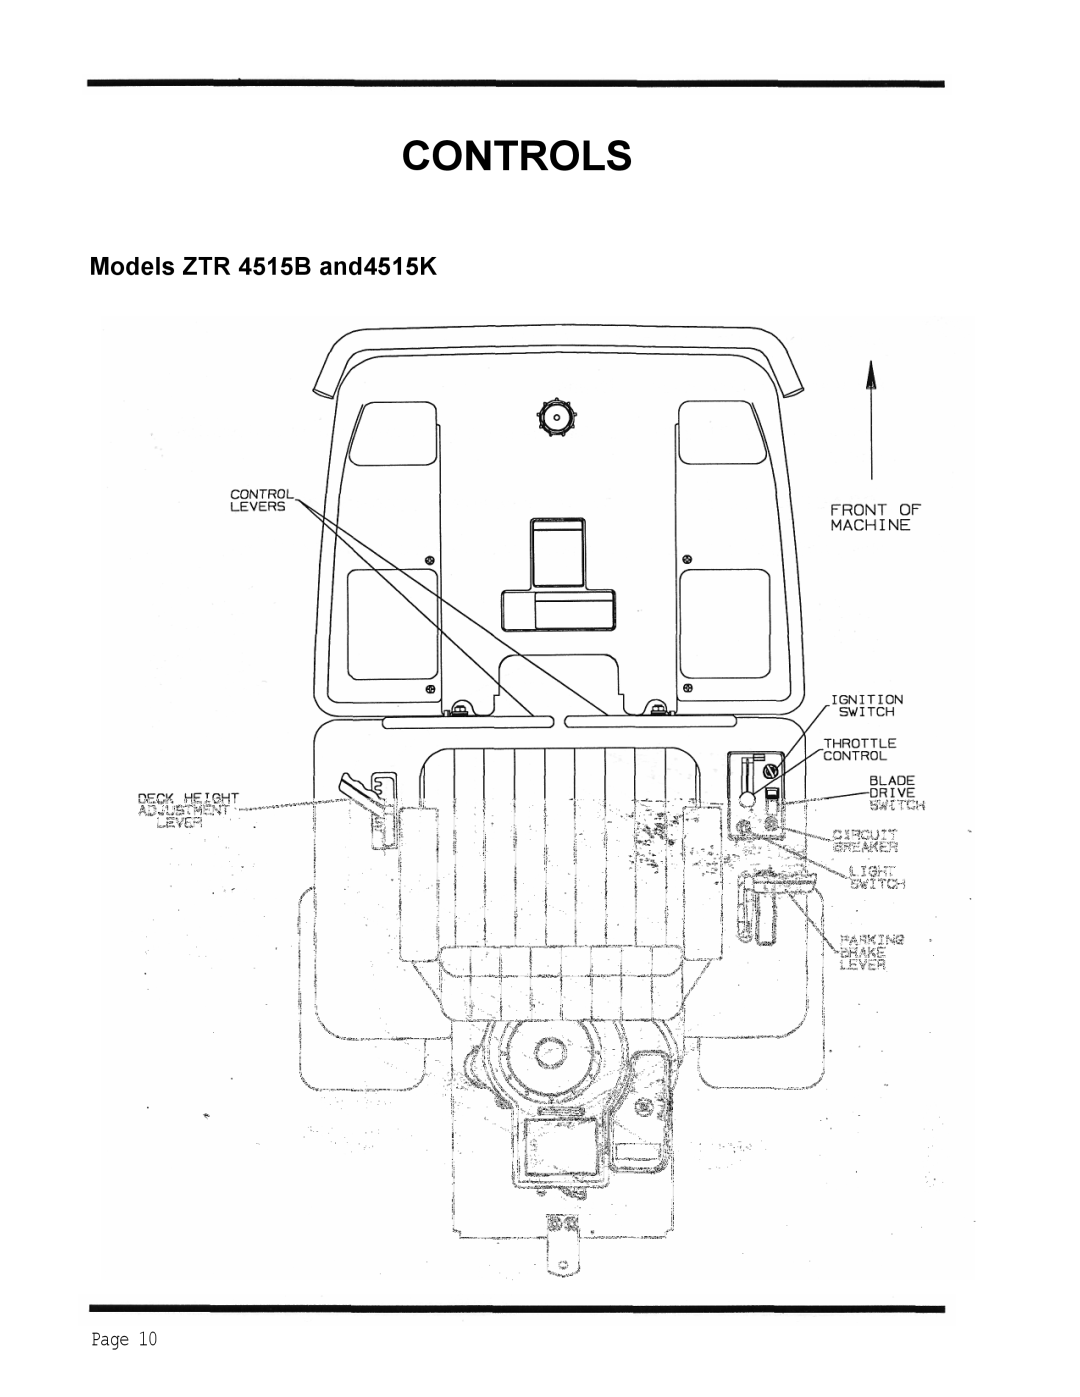 Dixon 1998, ZTR 4515K manual Controls, Models ZTR 4515B and4515K, Page 